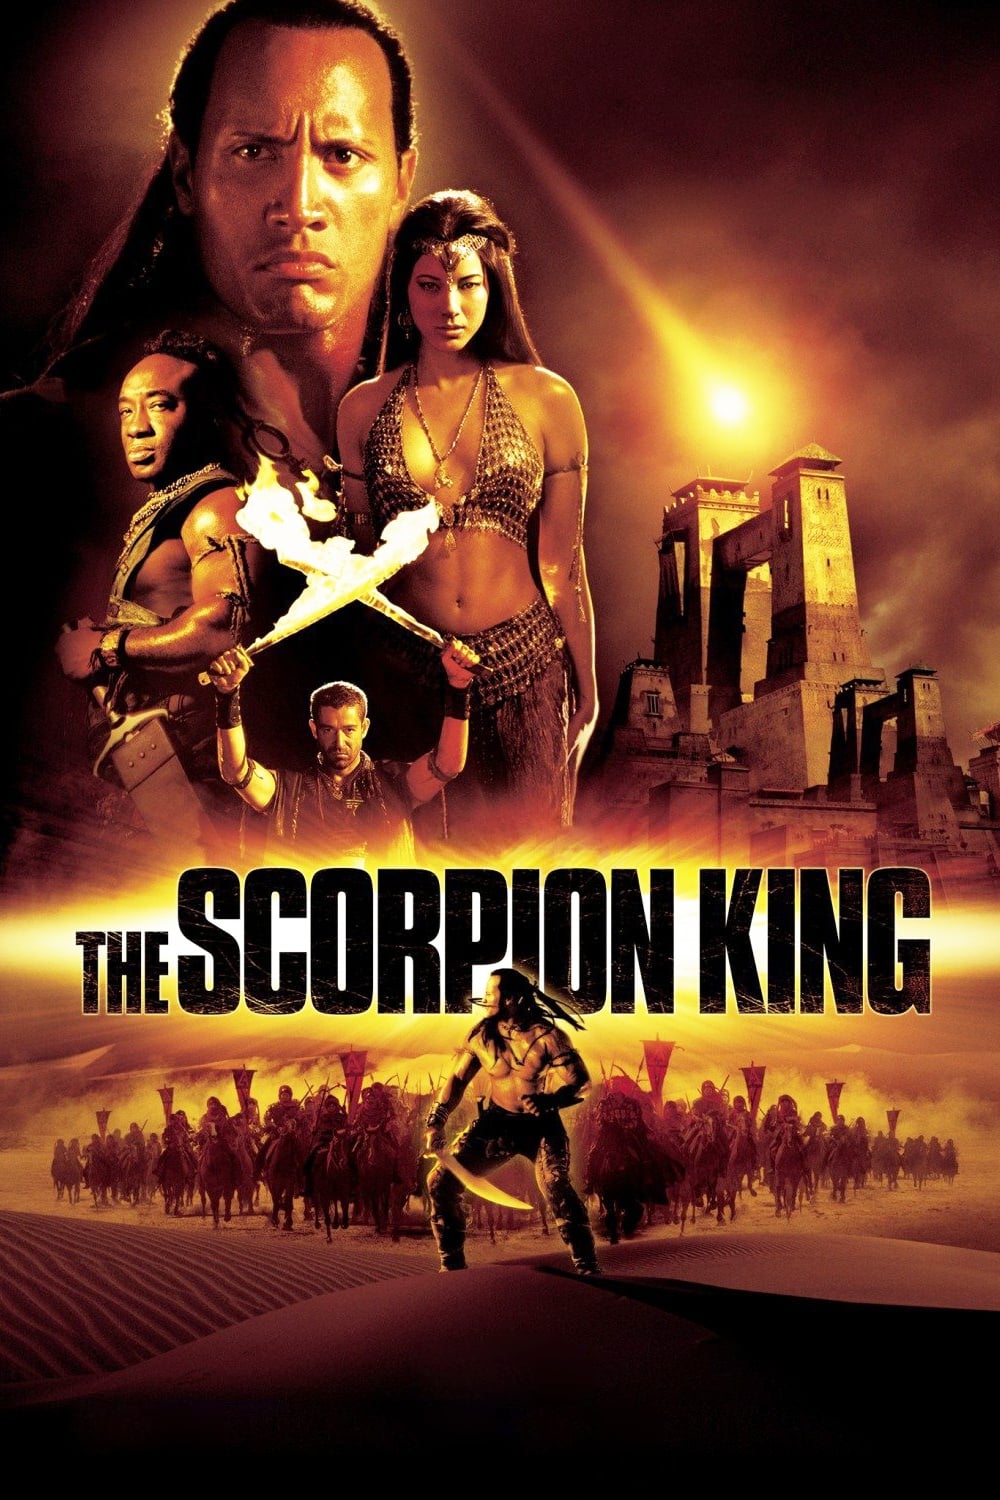 Le Roi Scorpion (2002)